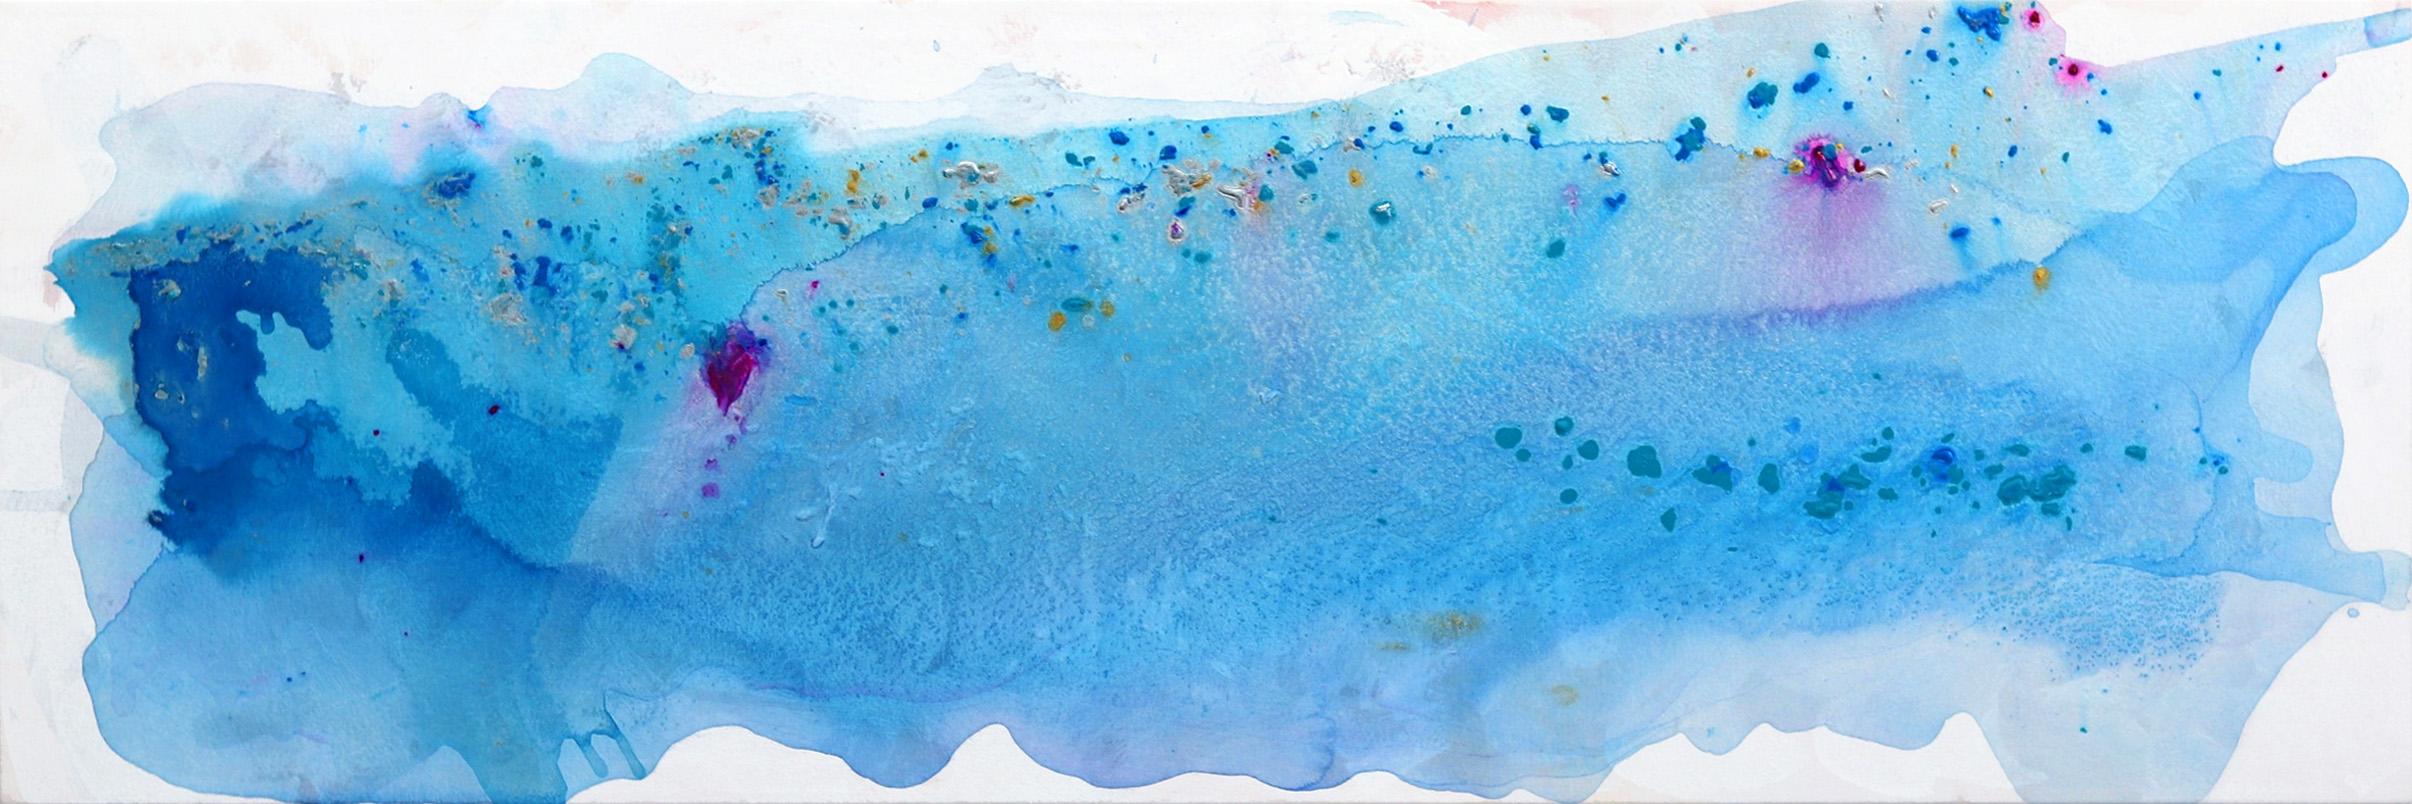 Abstract Painting Clara Berta - Hermosa Way - Grande peinture abstraite bleue originale sur toile